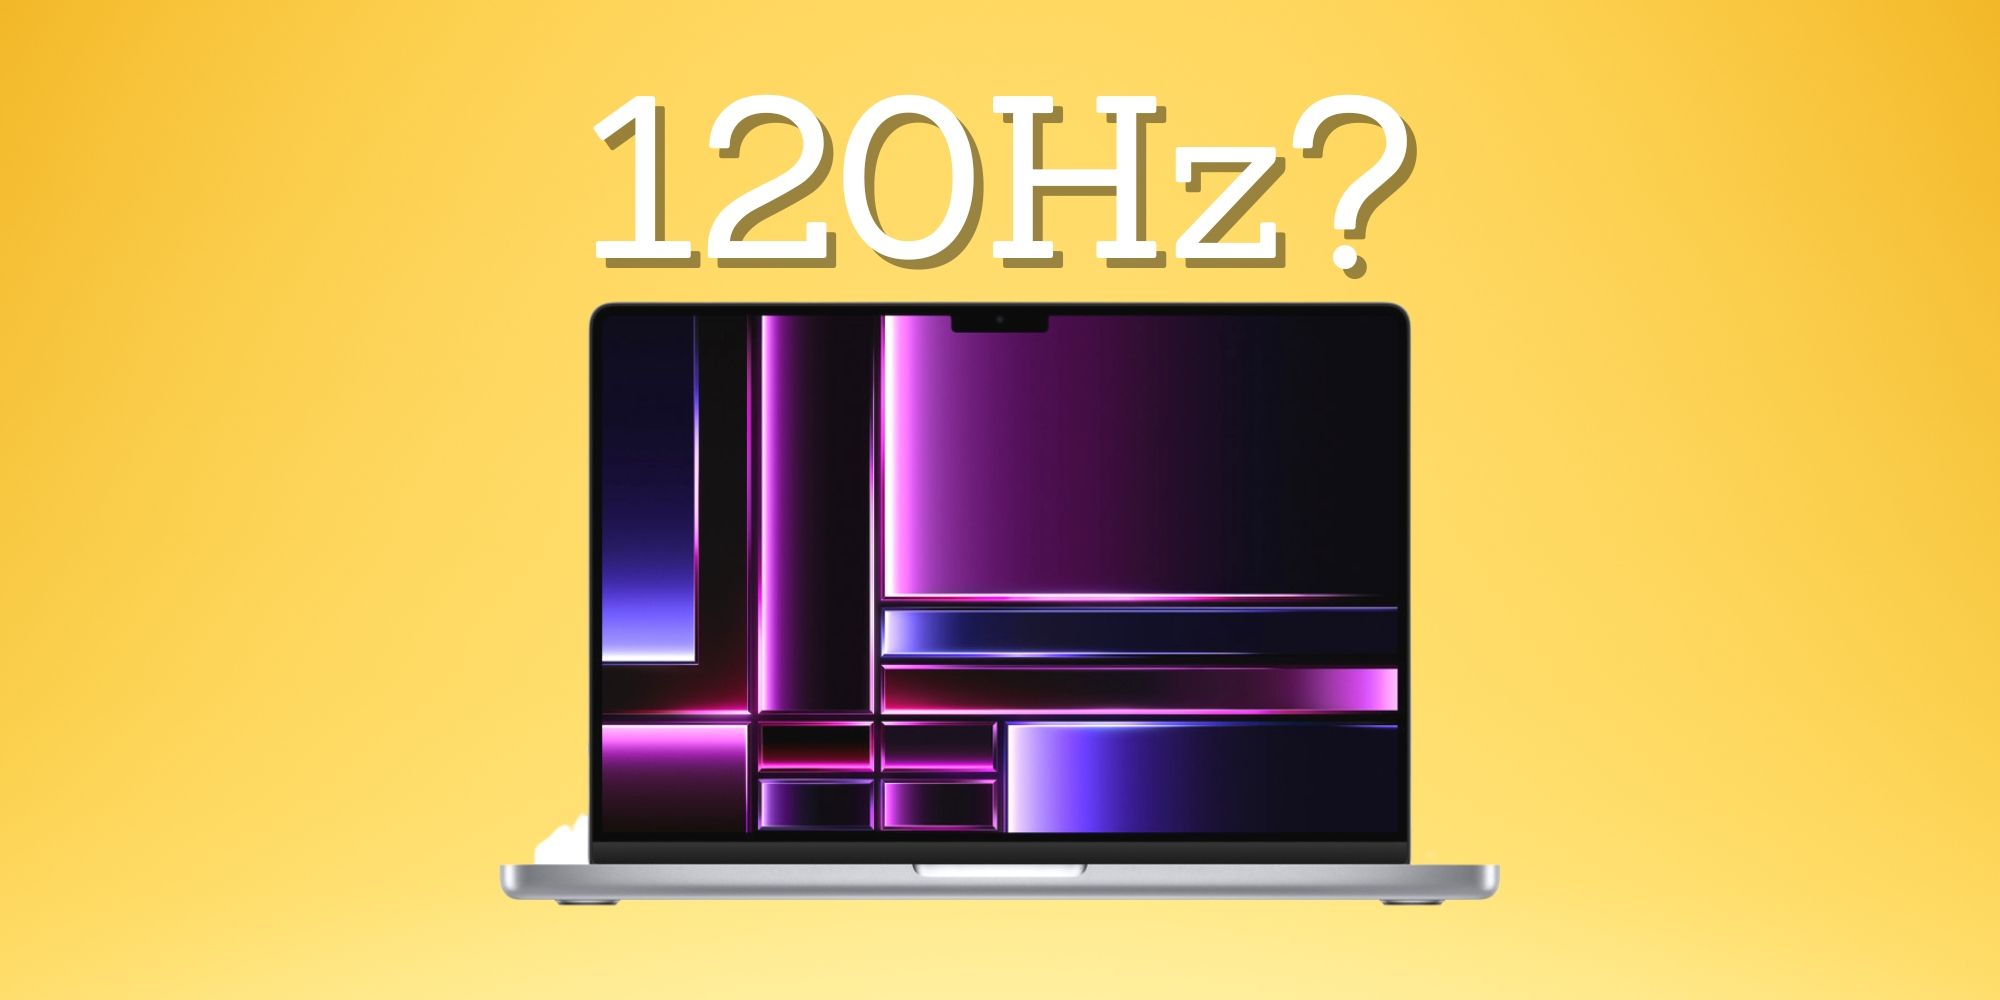 ¿Qué MacBooks tienen una pantalla de 120 Hz?  Aquí está la lista completa